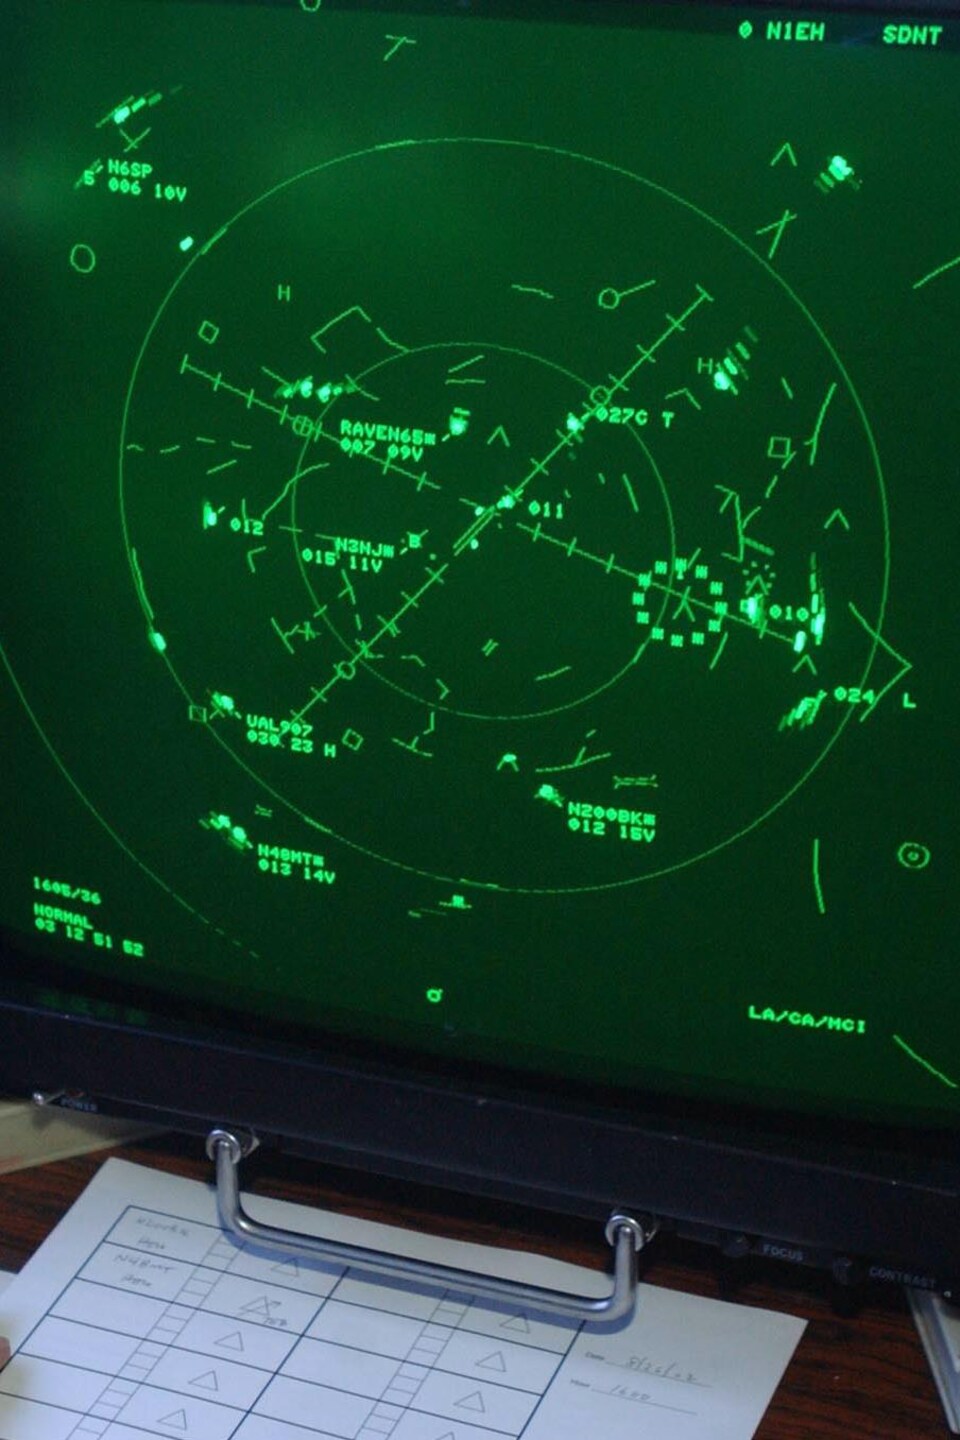 Un contrôleur aérien surveille un écran radar pour coordonner les arrivées et les départs à l'aéroport international de Newark, dans le New Jersey, aux États-Unis, le 26 août 2002. Le cercle en pointillé représente la statue de la Liberté.